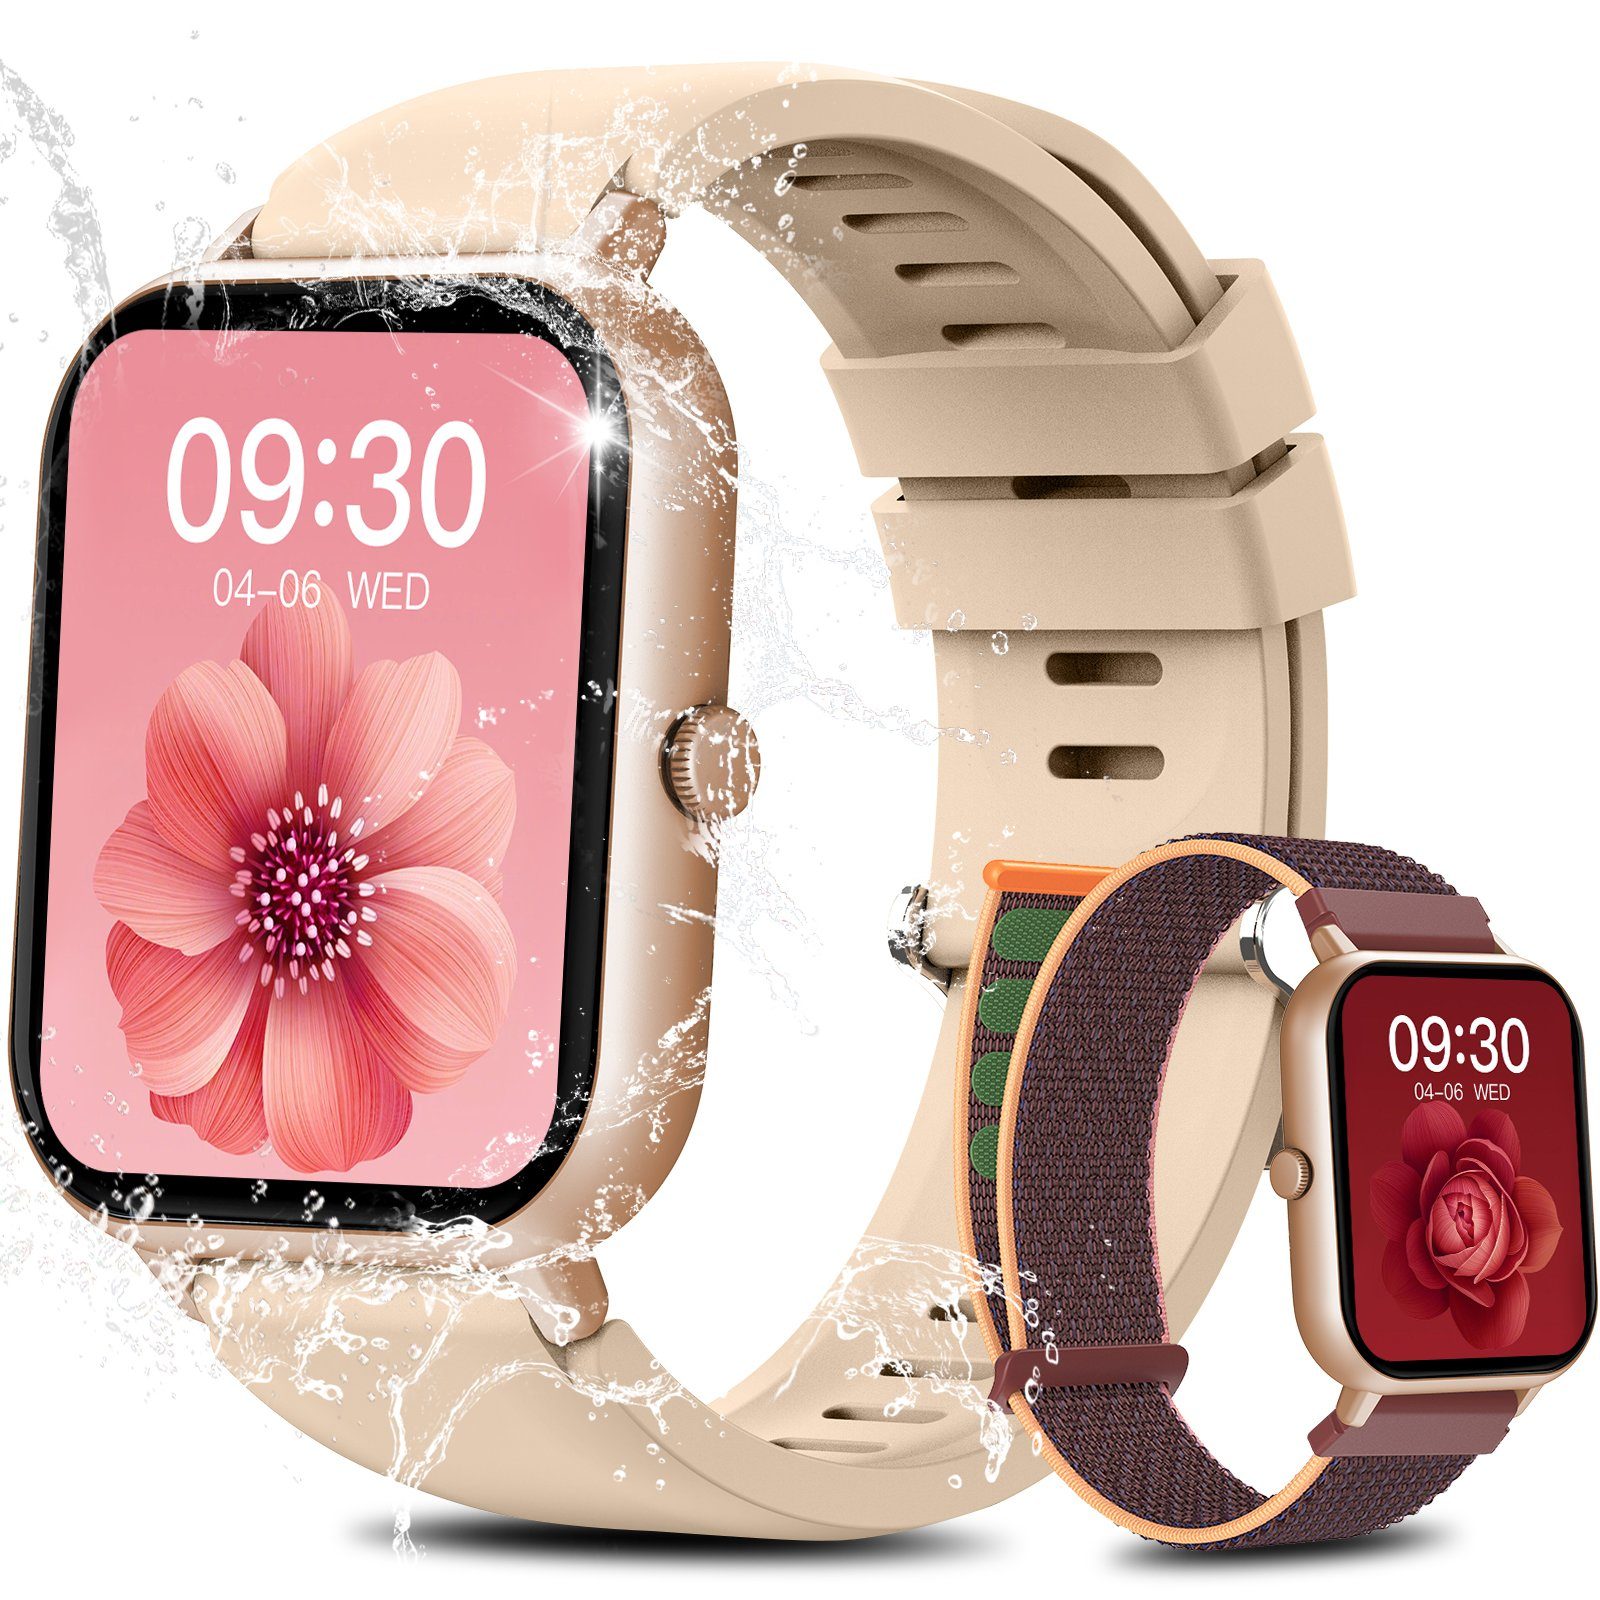 Yuede Smartwatch, Fitness Tracker uhr mit Anruffunktion für Damen und Herren Smartwatch (Quadratischer 1,85%27%27-Voll-Touch-Farbdisplay Zoll Zoll) Gesundheits-Smartwatch mit Blutsauerstoff, Blutdruckmessung, Herzfrequenz, Schlafqualität, Schrittzähler, Atemtraining, Musiksteuerung und Fernfotografie etc., IP67 wasserdichte Sportuhr mit mehr als 50 Sportmodi und Doppelriemen, für Android IOS